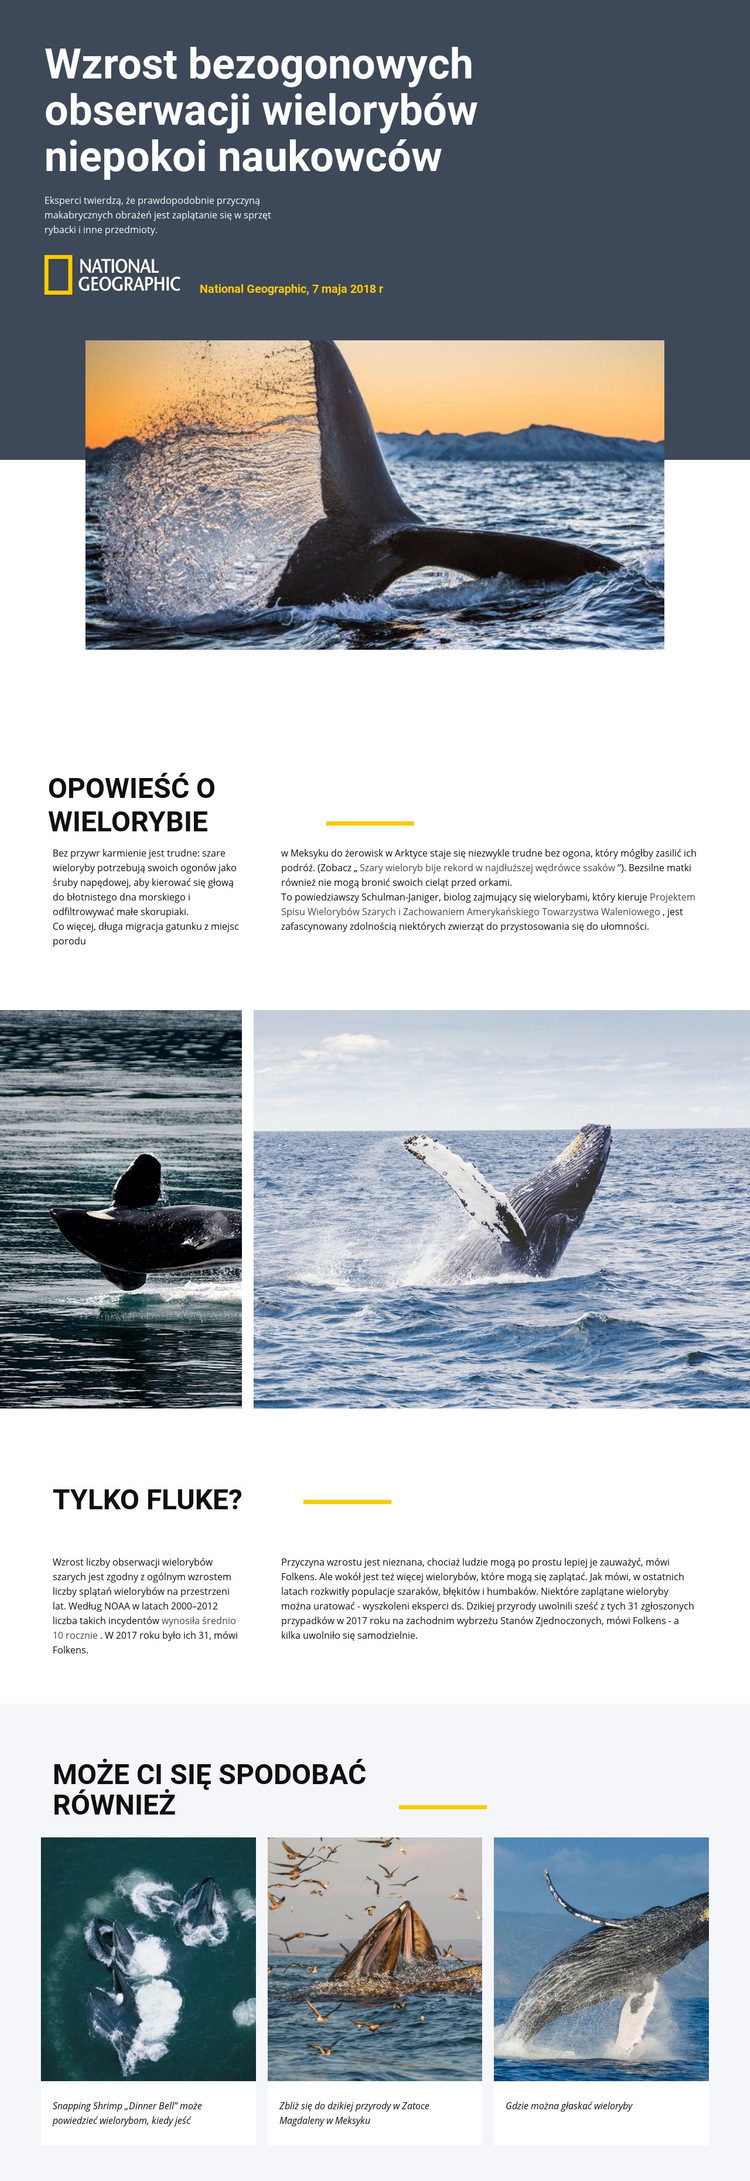 Centrum obserwacji wielorybów Szablon witryny sieci Web